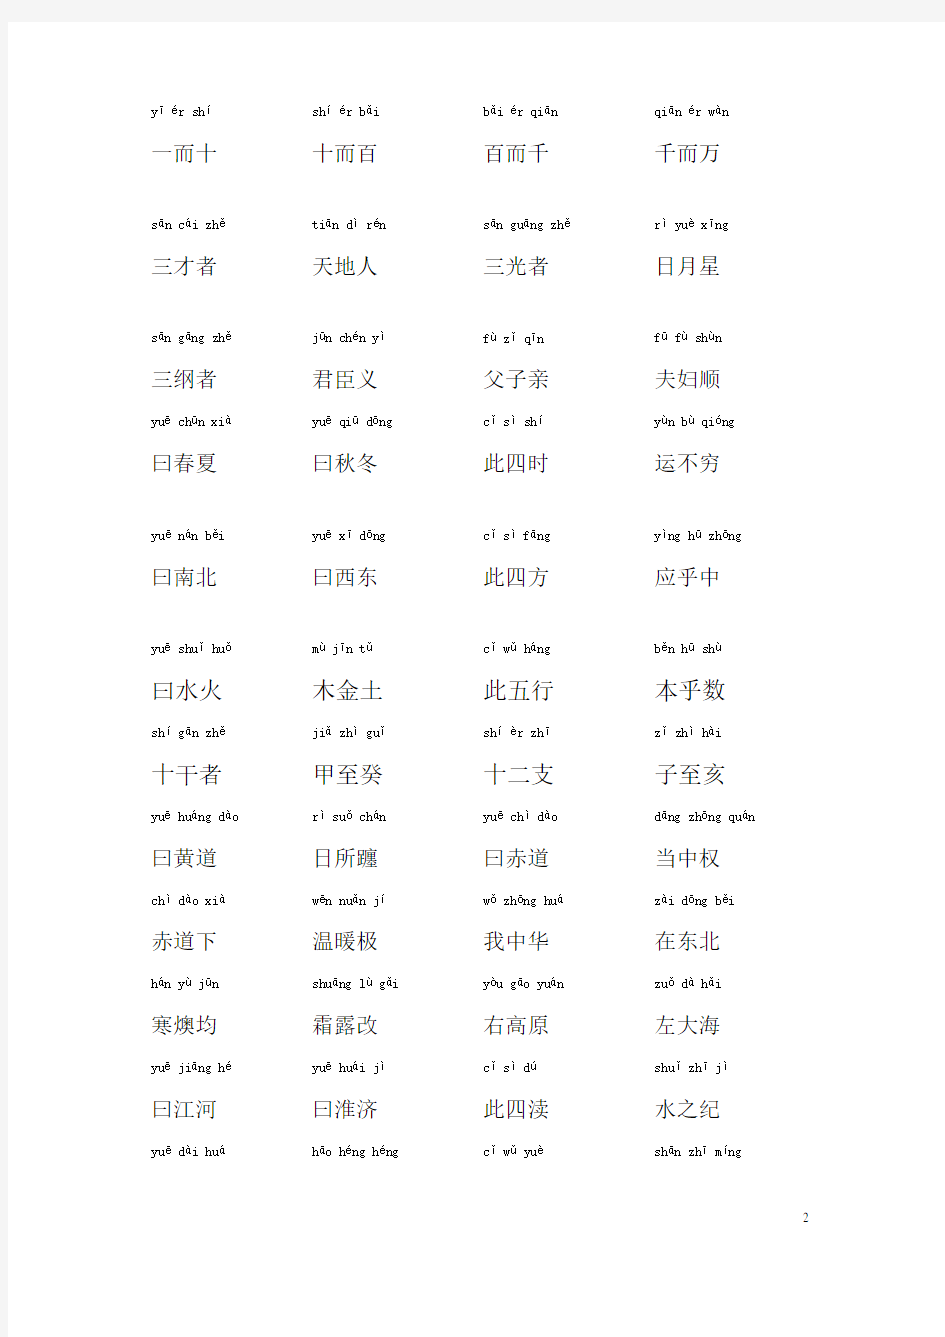 三字经带拼音全文及注释  简化版